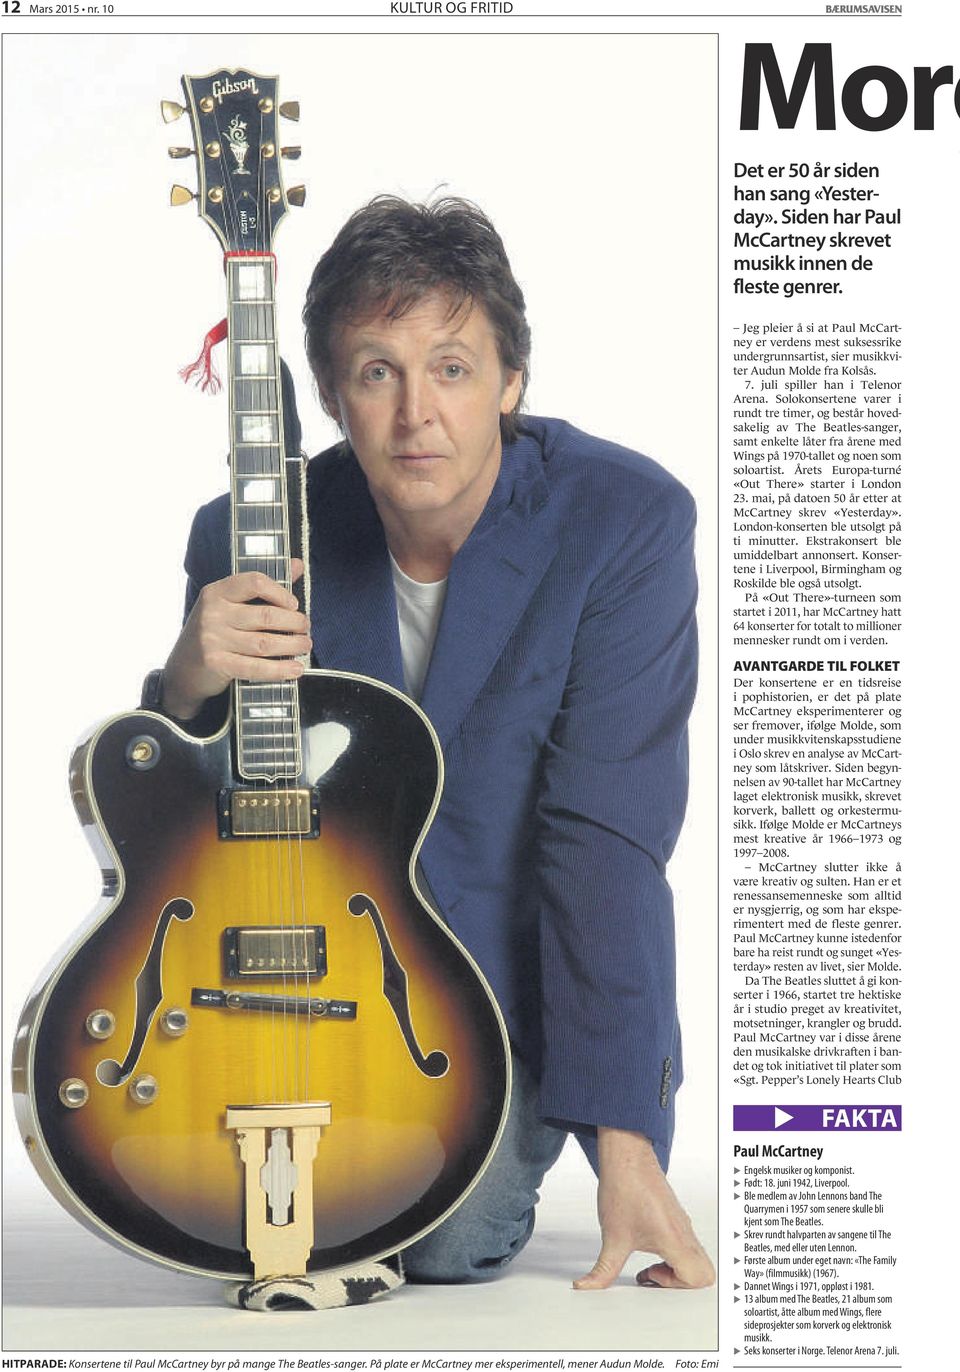 Foto: Emi Jeg pleier å si at Paul McCartney er verdens mest suksessrike undergrunnsartist, sier musikkviter Audun Molde fra Kolsås. 7. juli spiller han i Telenor Arena.